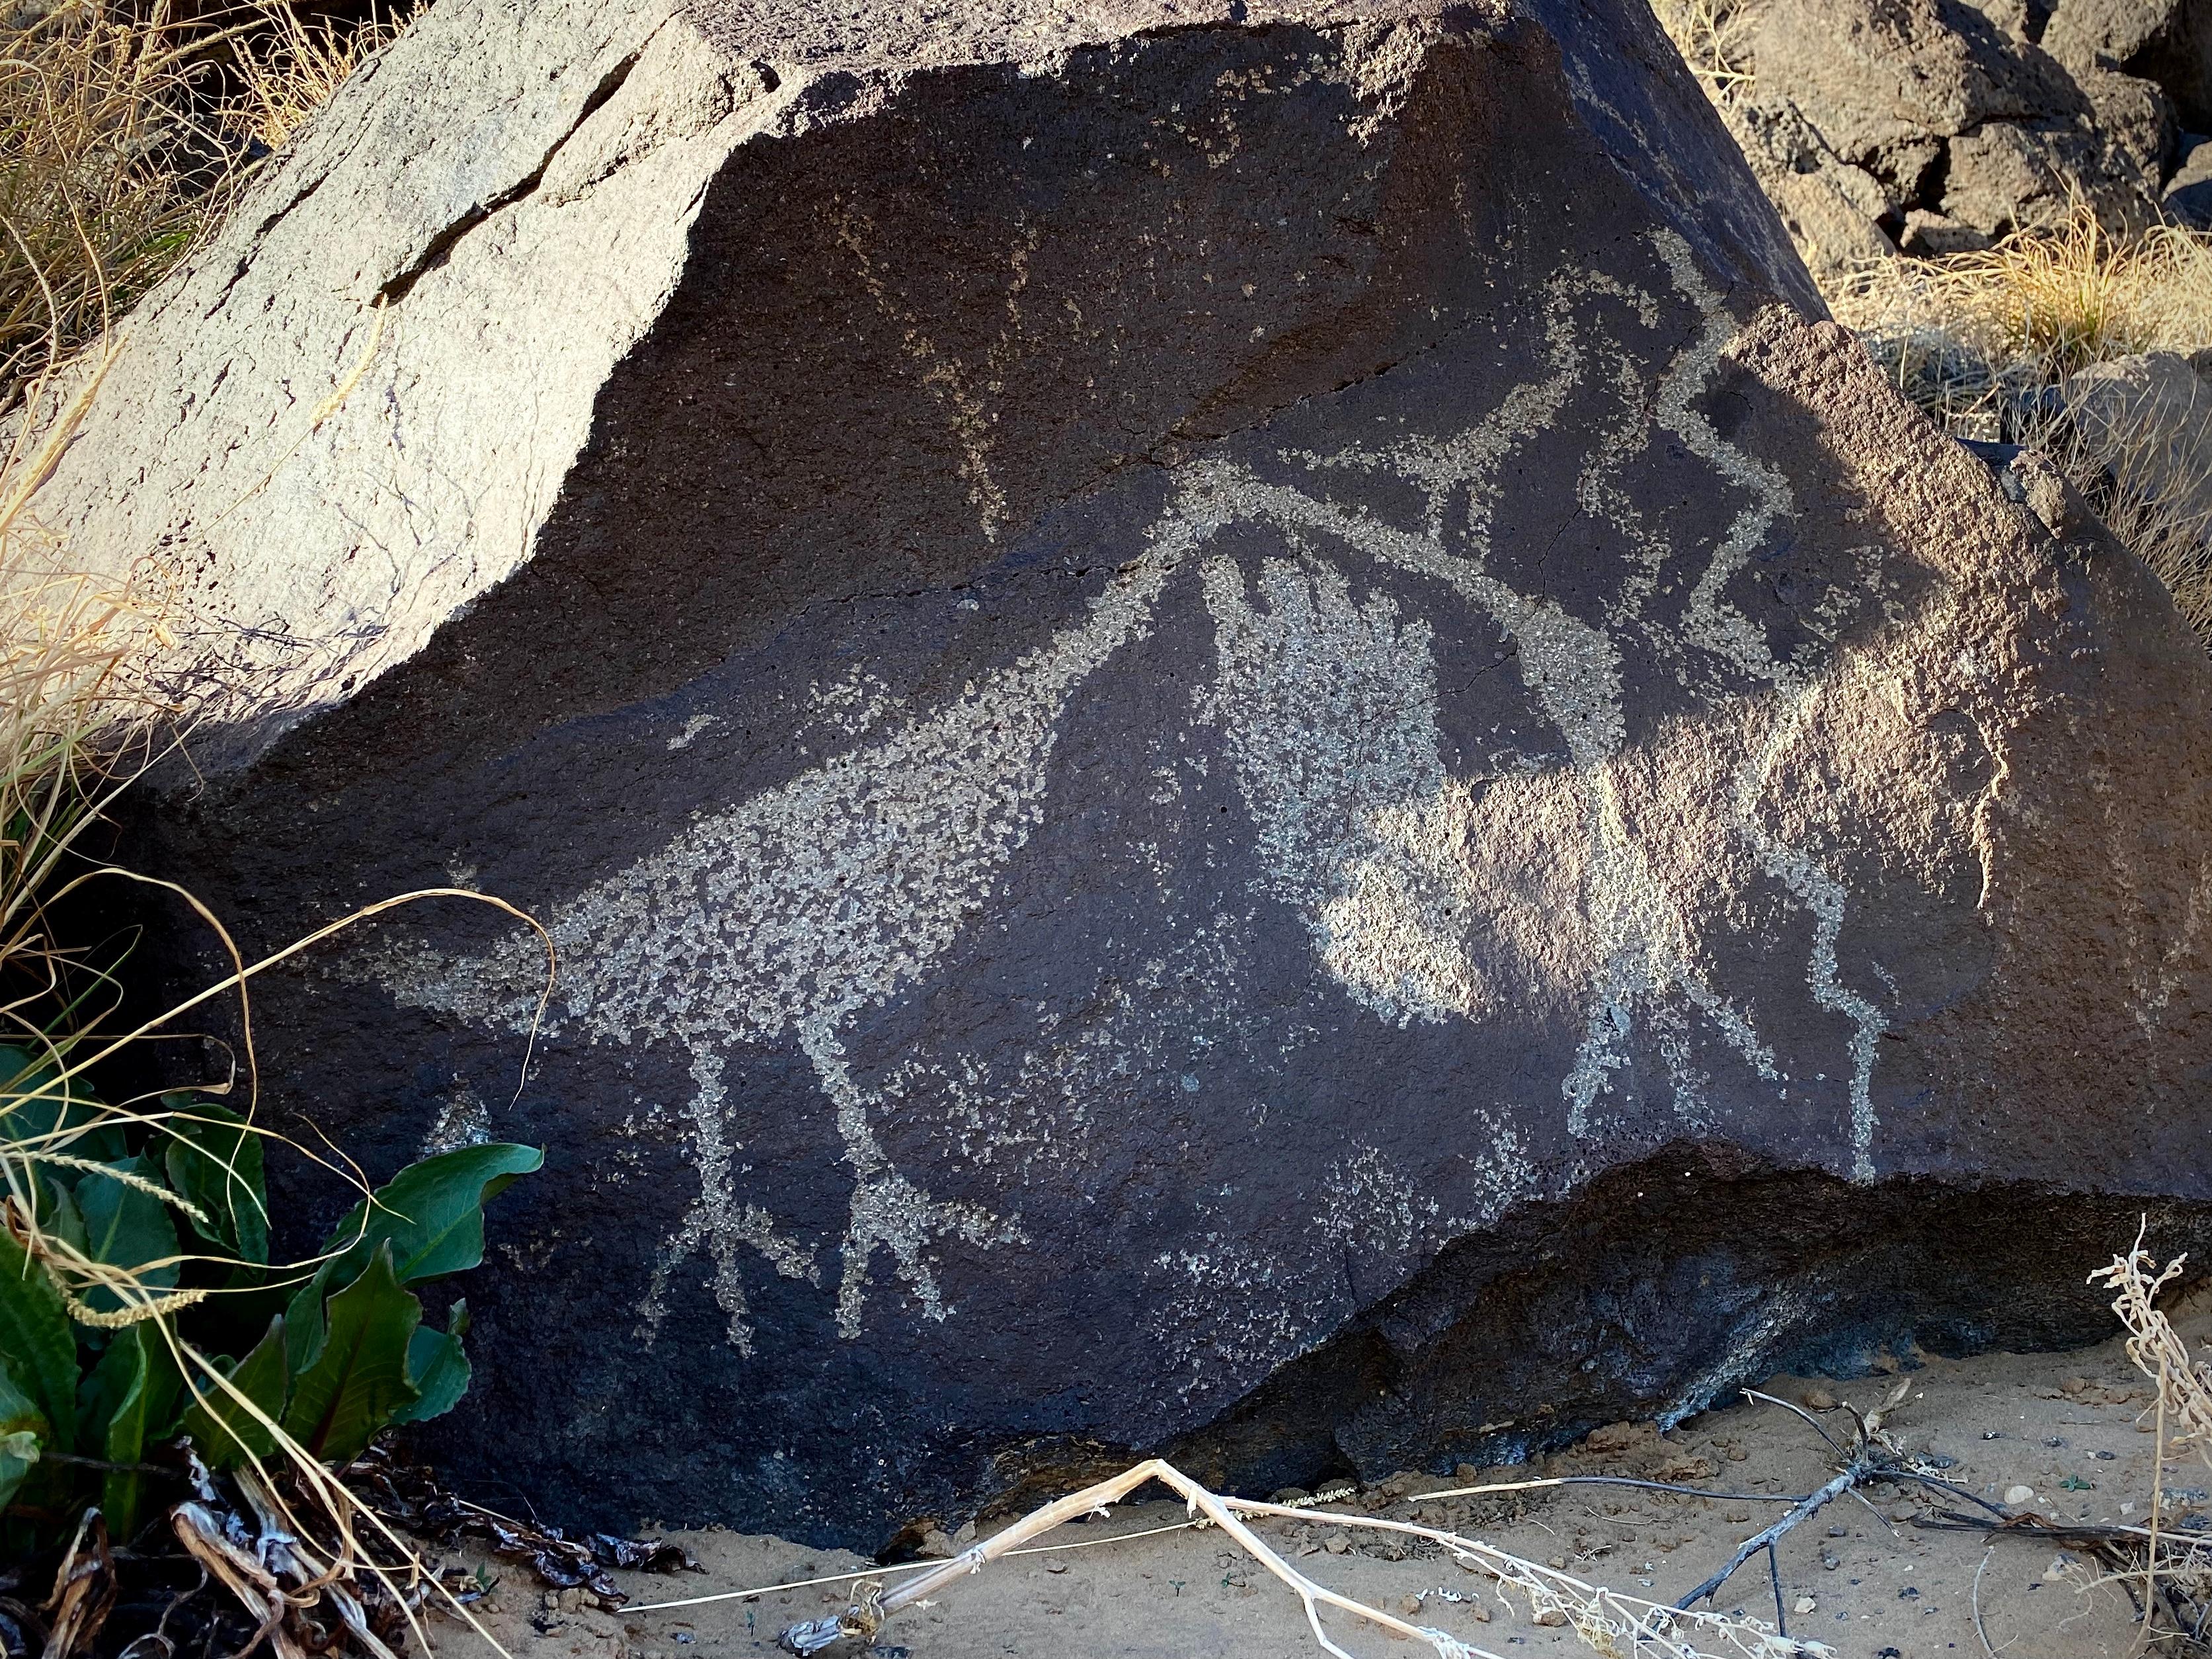 Petroglyphs of a bird and a footprint on a dark boulder.